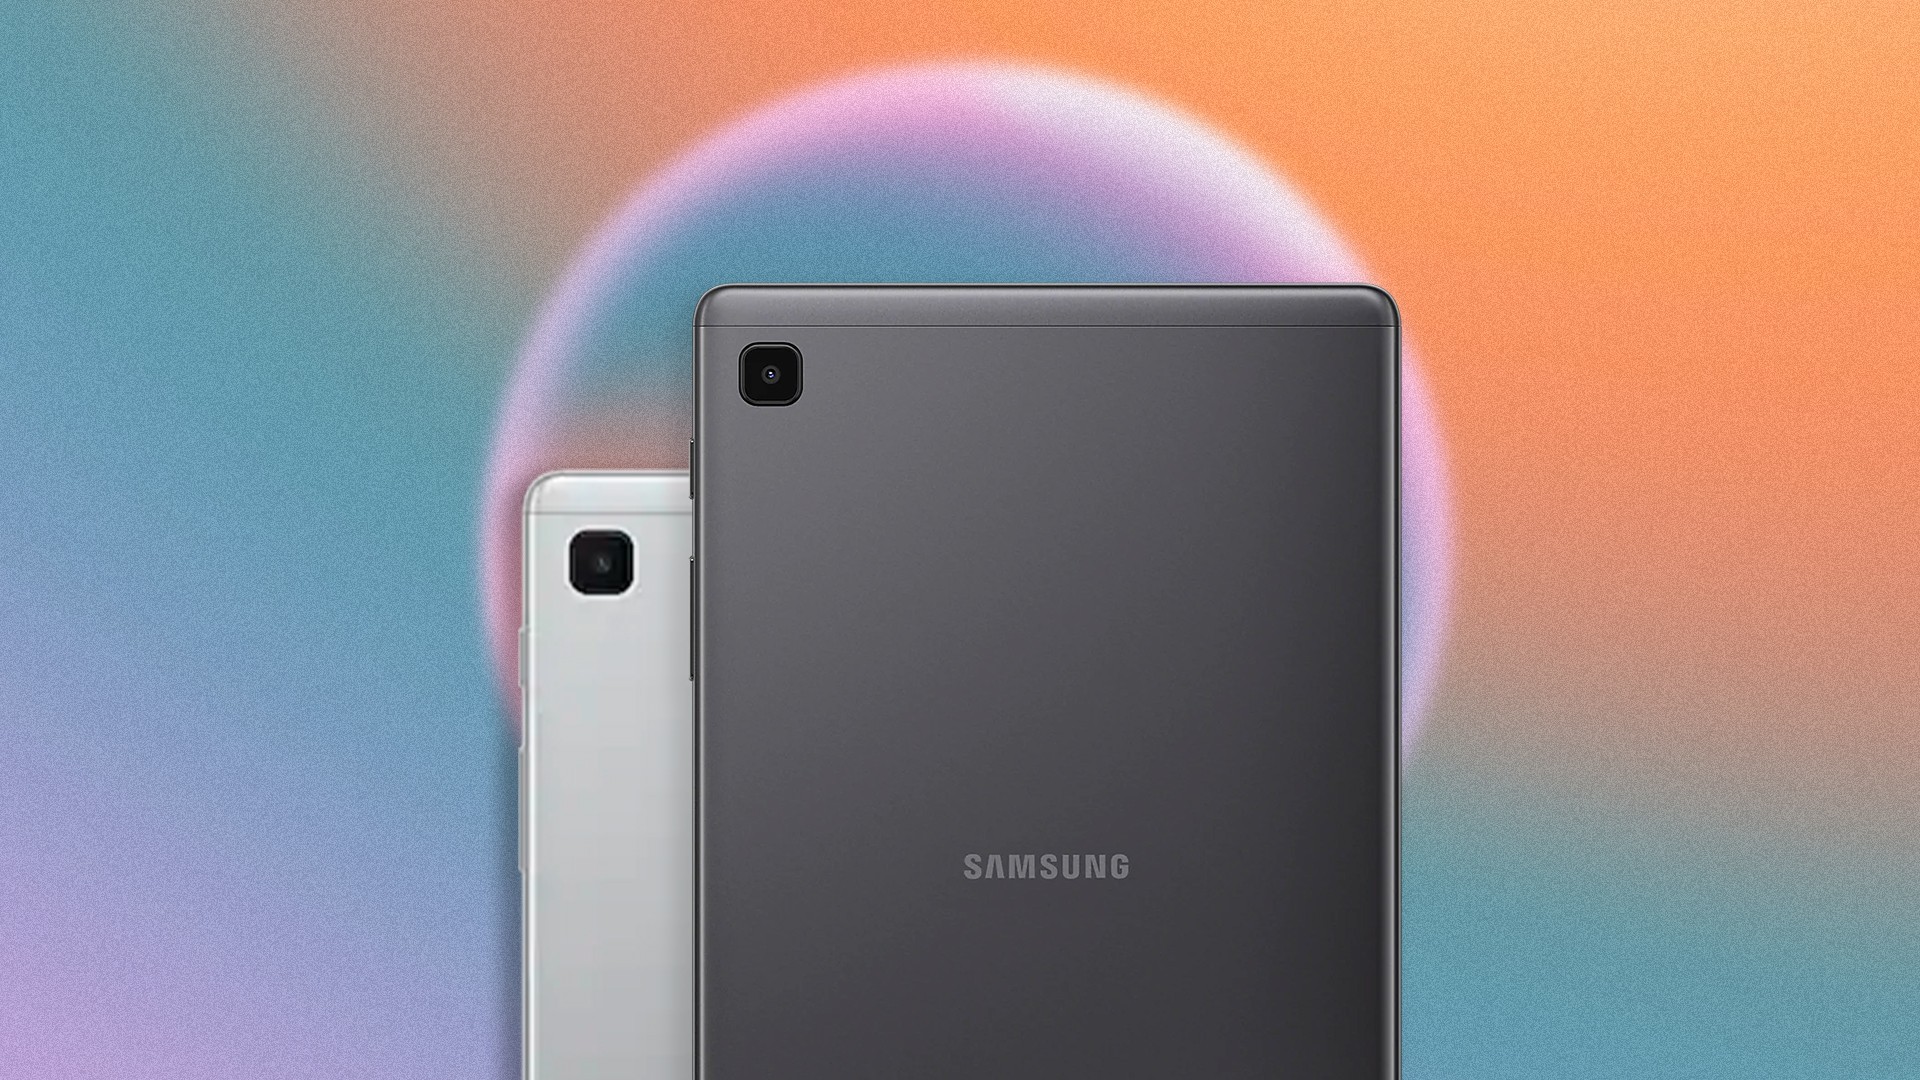 Galaxy Tab S8 Ultra ser lanado em janeiro com SD 8 Gen 1 e preo atrativo, diz rumor